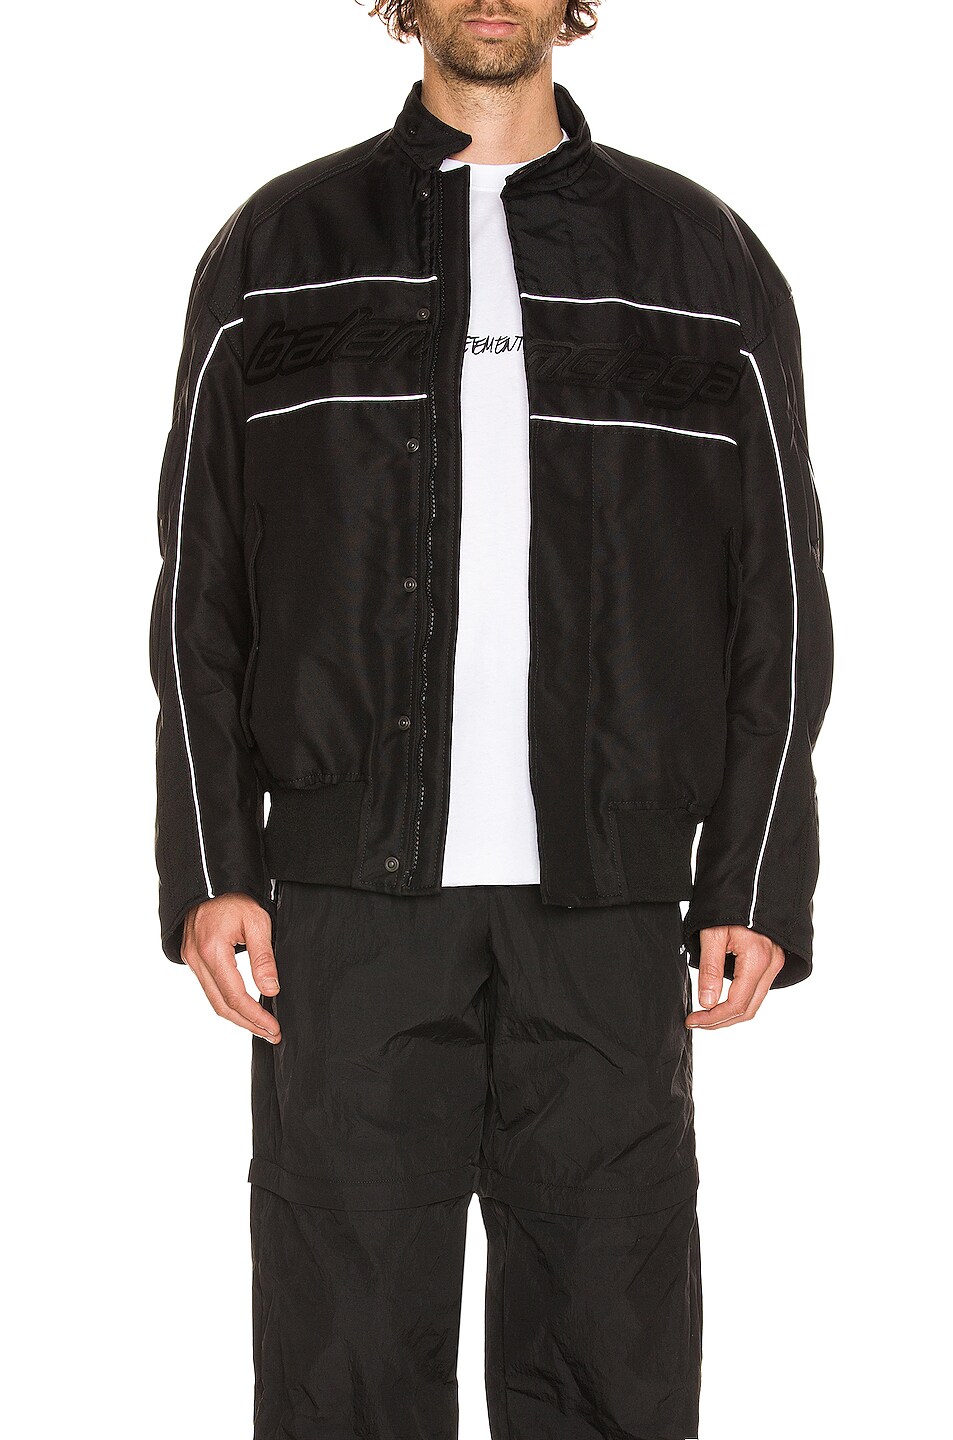 Balenciaga Racing Jacket in Black & Grey | FWRD